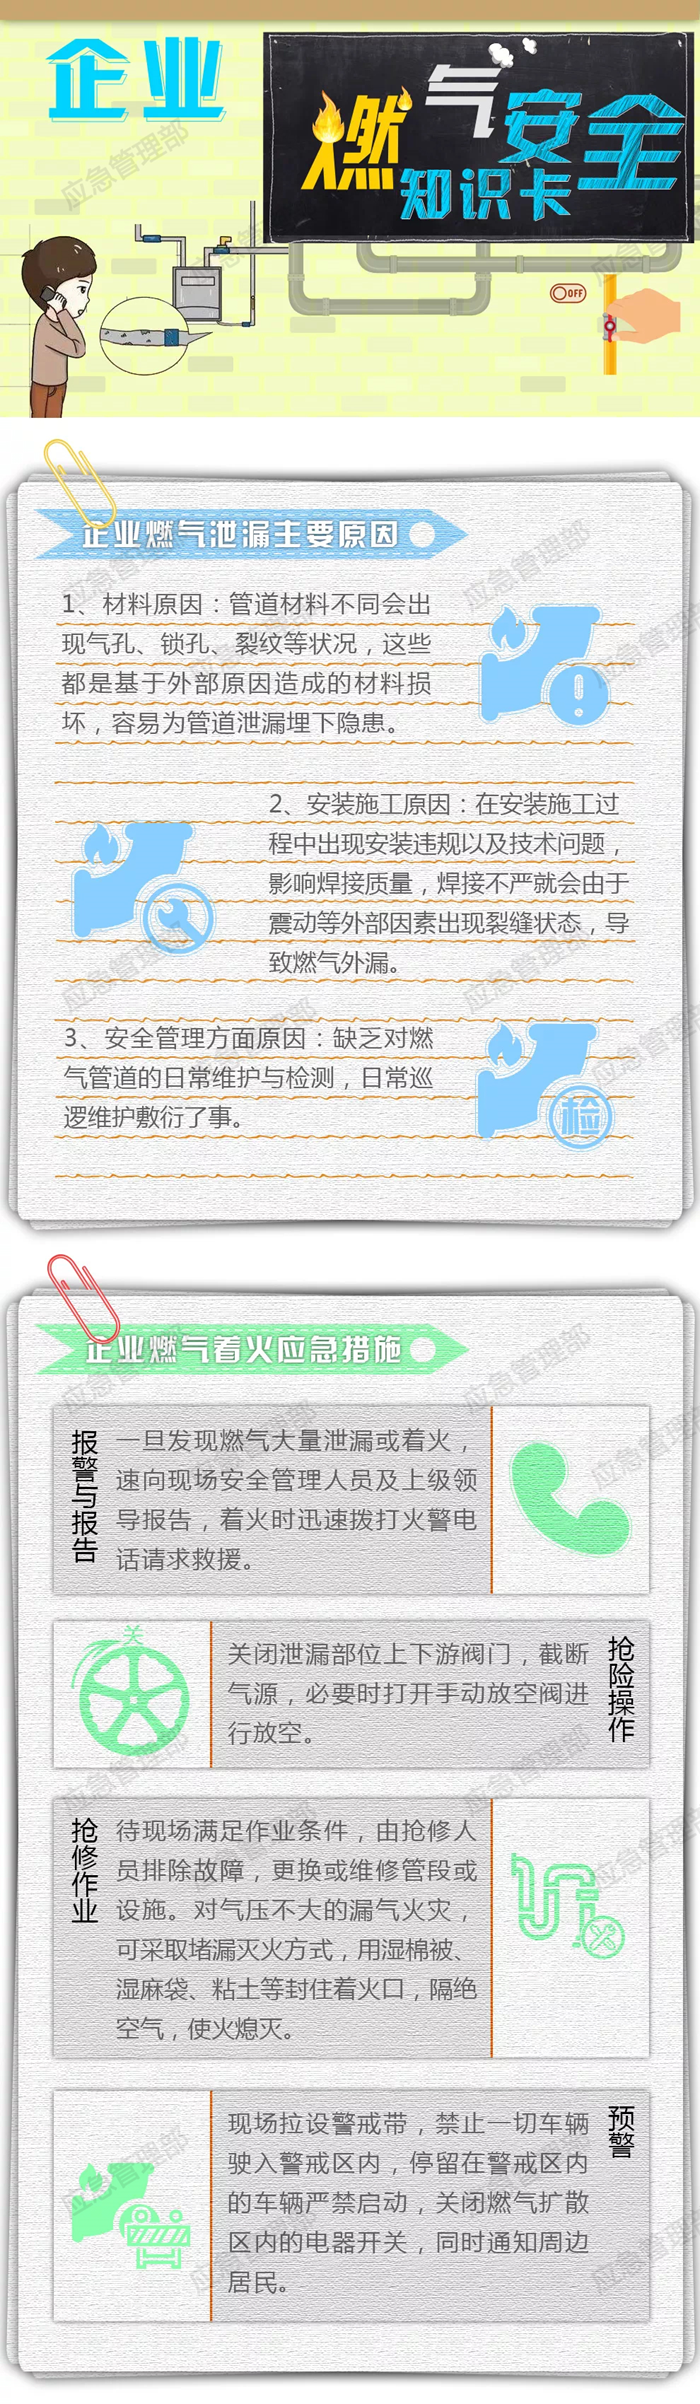 企业燃气安全知识卡–中华人民共和国应急管理部